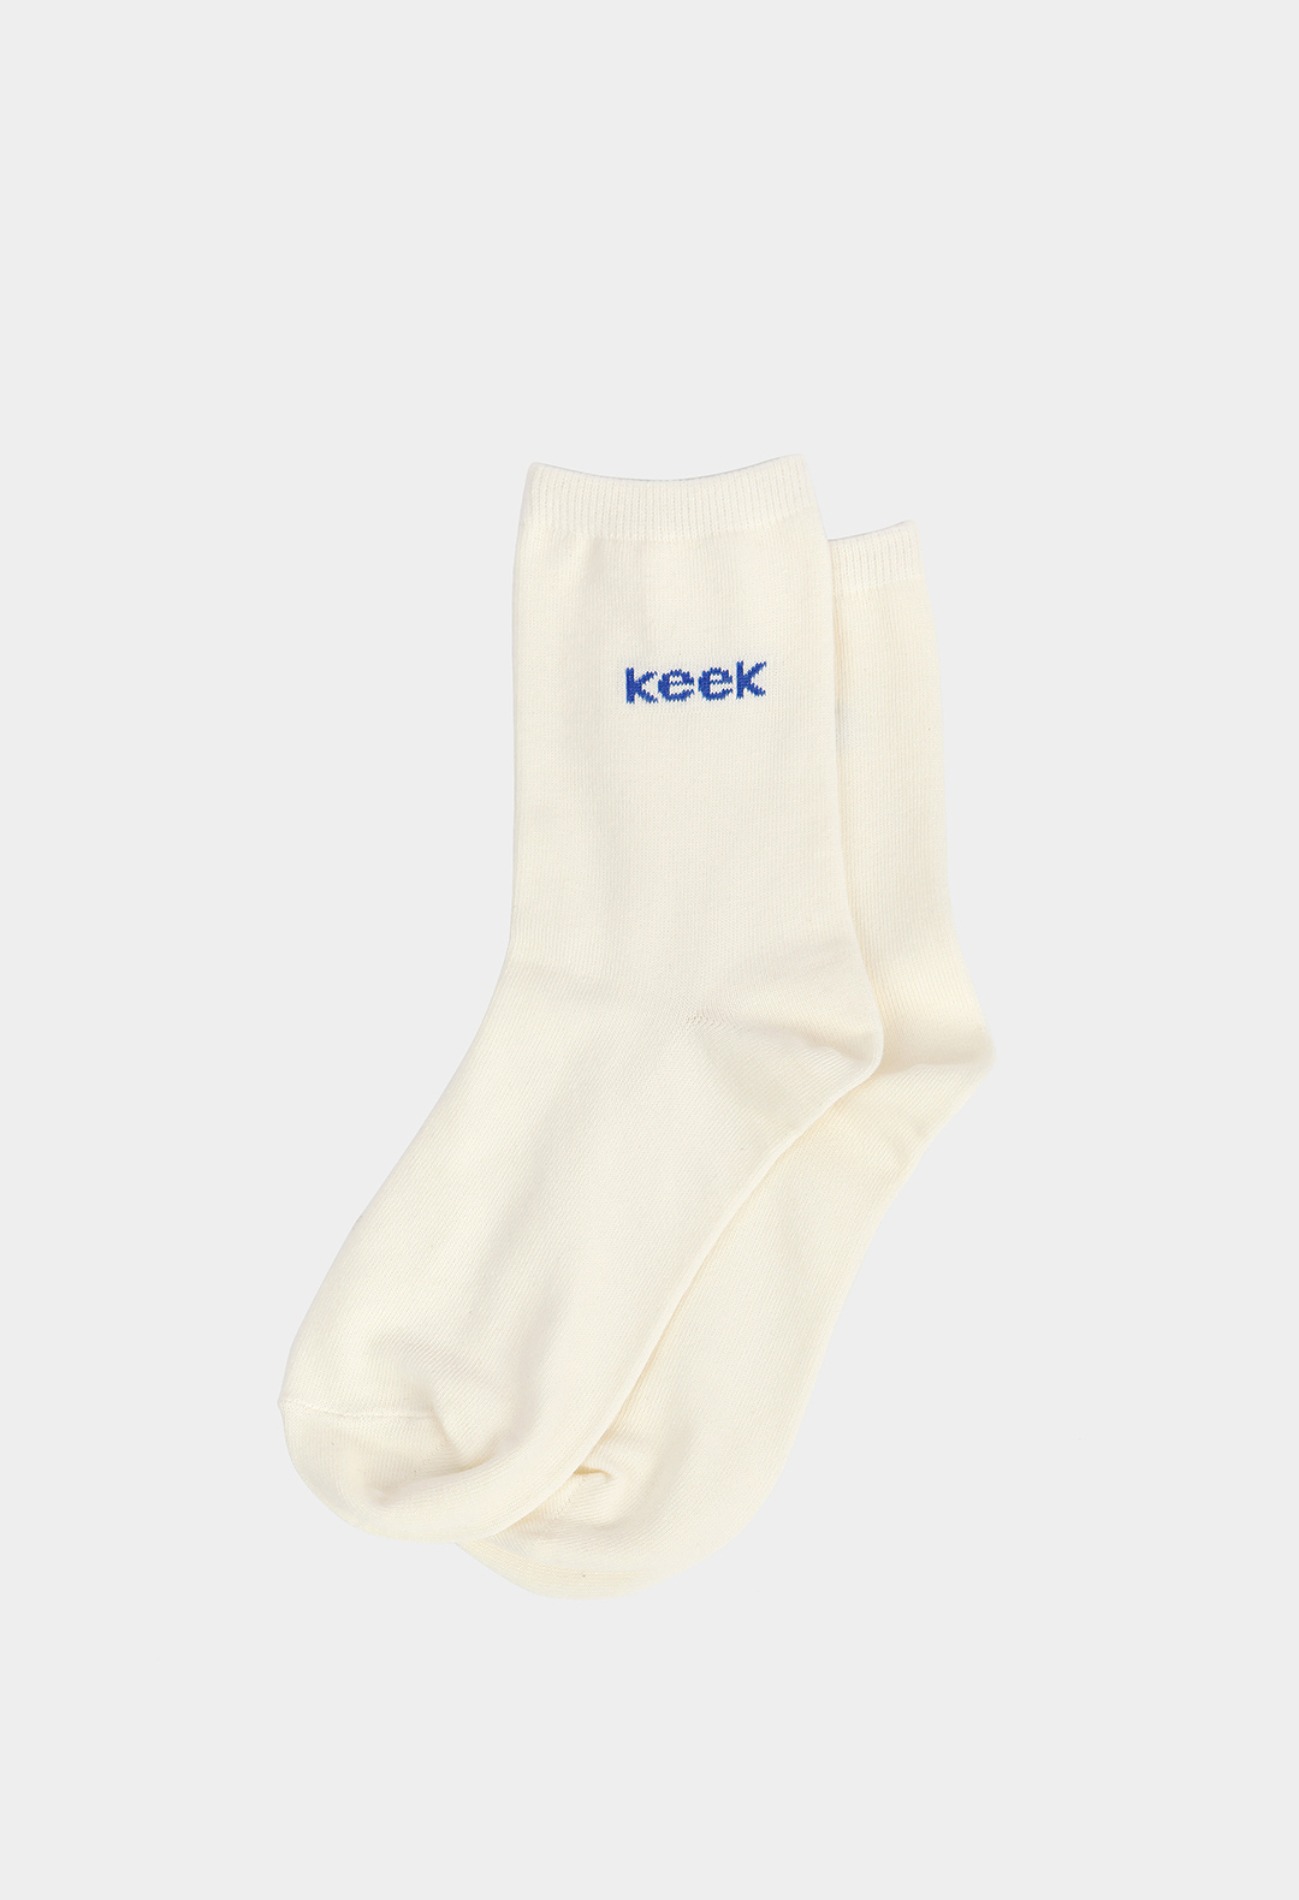 keek keek Logo Socks - Ivory 스트릿패션 유니섹스브랜드 커플시밀러룩 남자쇼핑몰 여성의류쇼핑몰 후드티 힙색